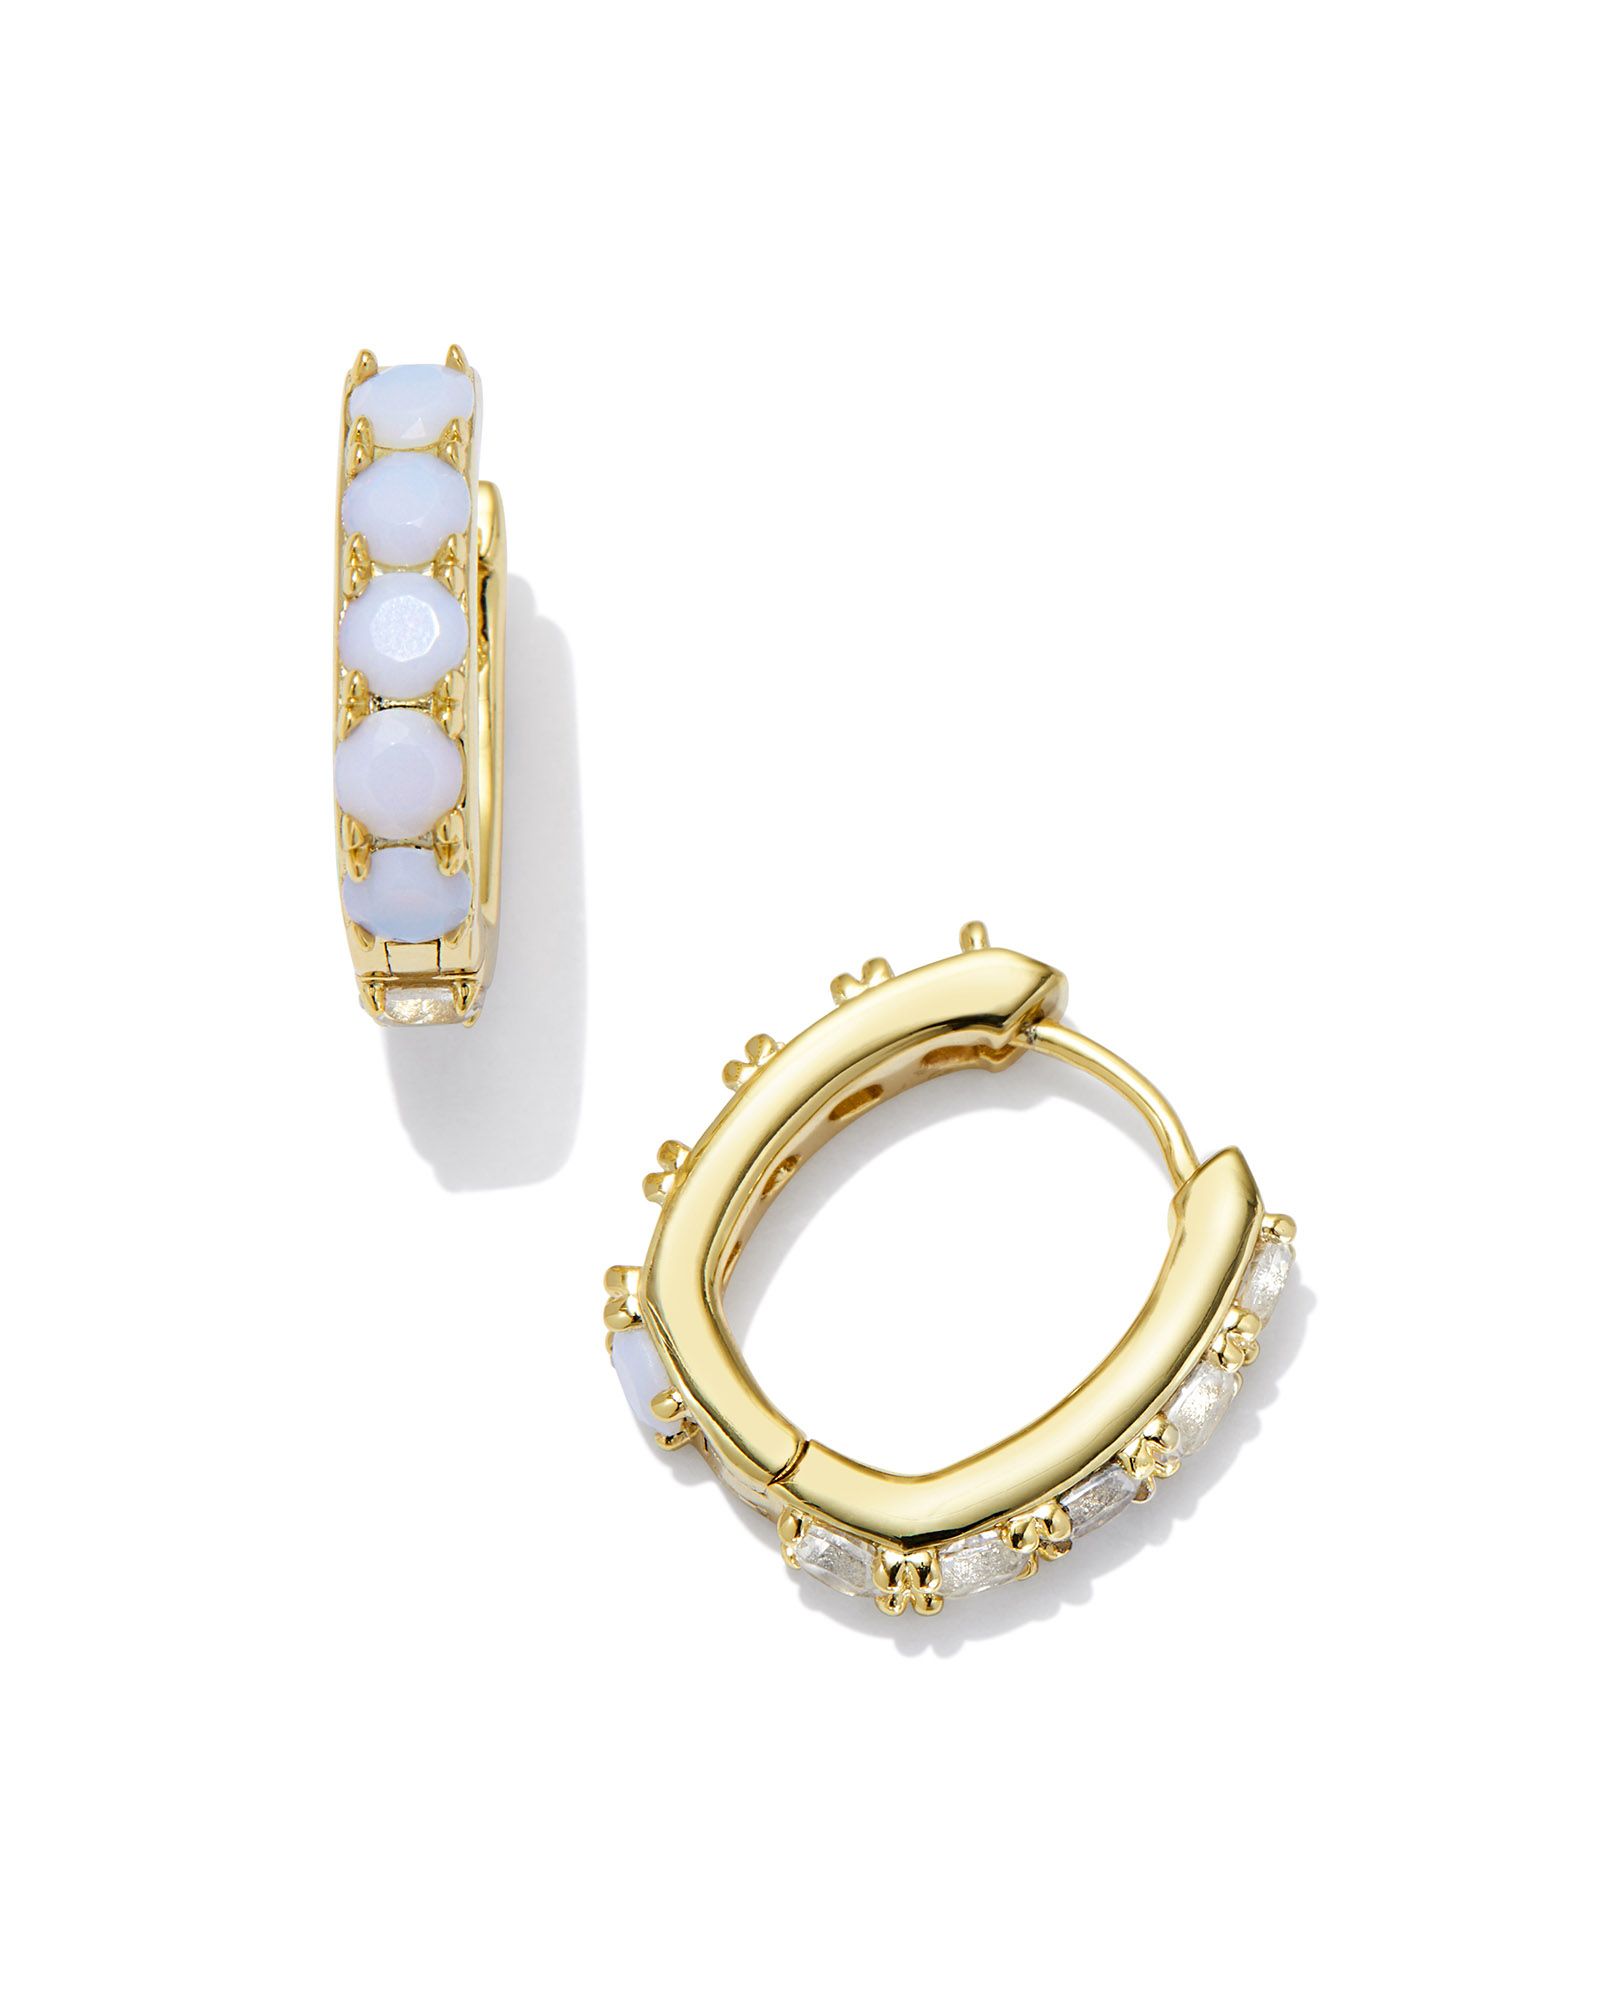 Chandler Gold Huggie Earrings in White Opalite Mix | Kendra Scott